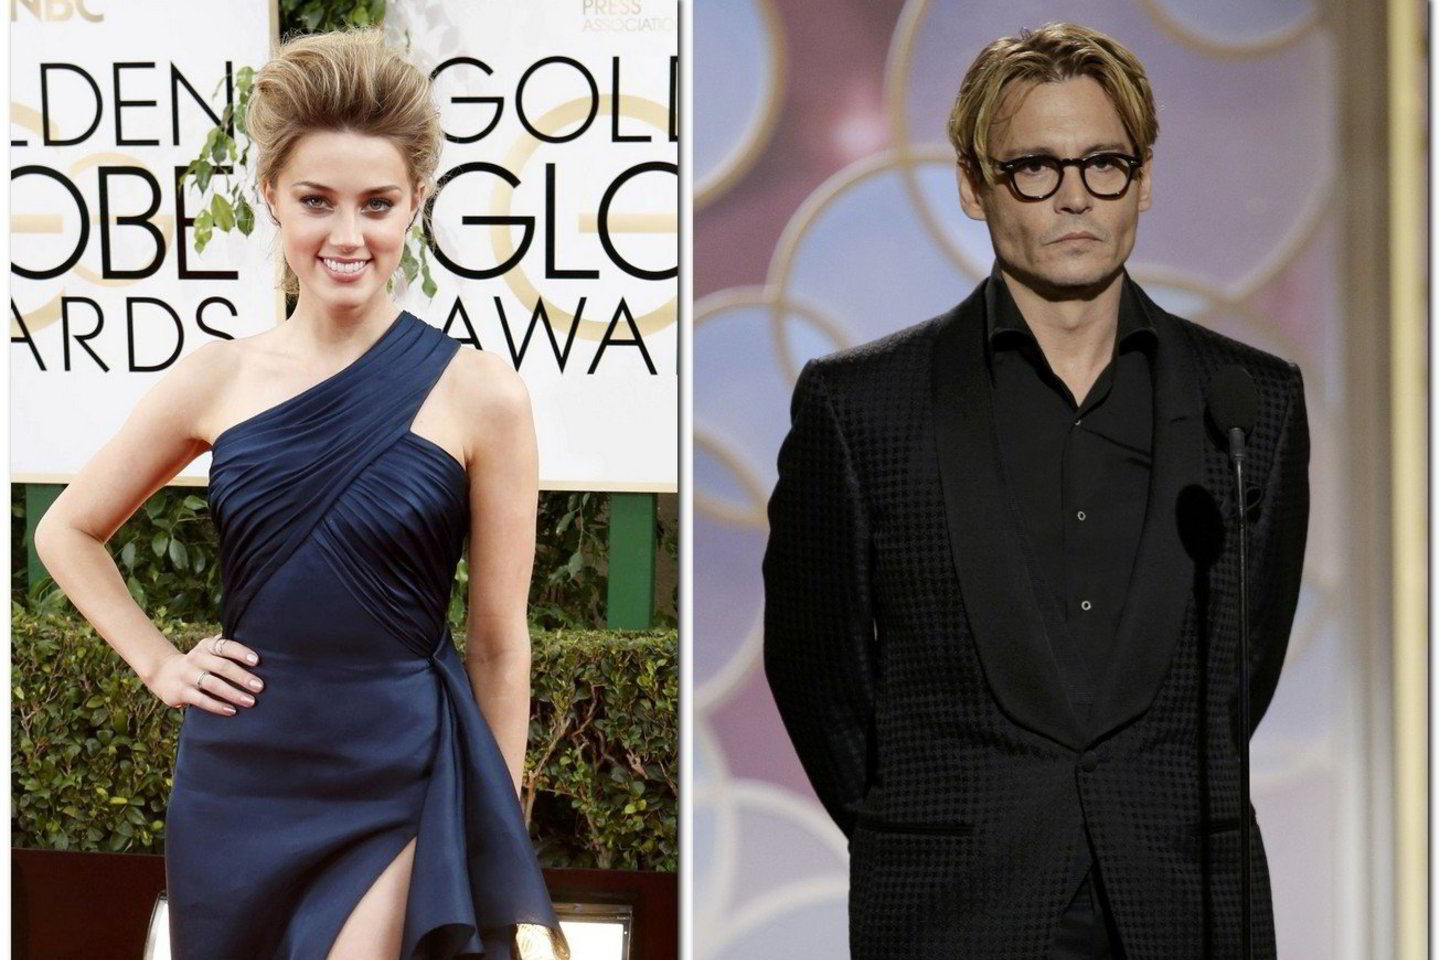 Daugelį metų seksualiausiu planetos vyru tituluojamas J.Deppas pasipiršo aktorei Amber Heard?<br>„Reuters“ nuotr.